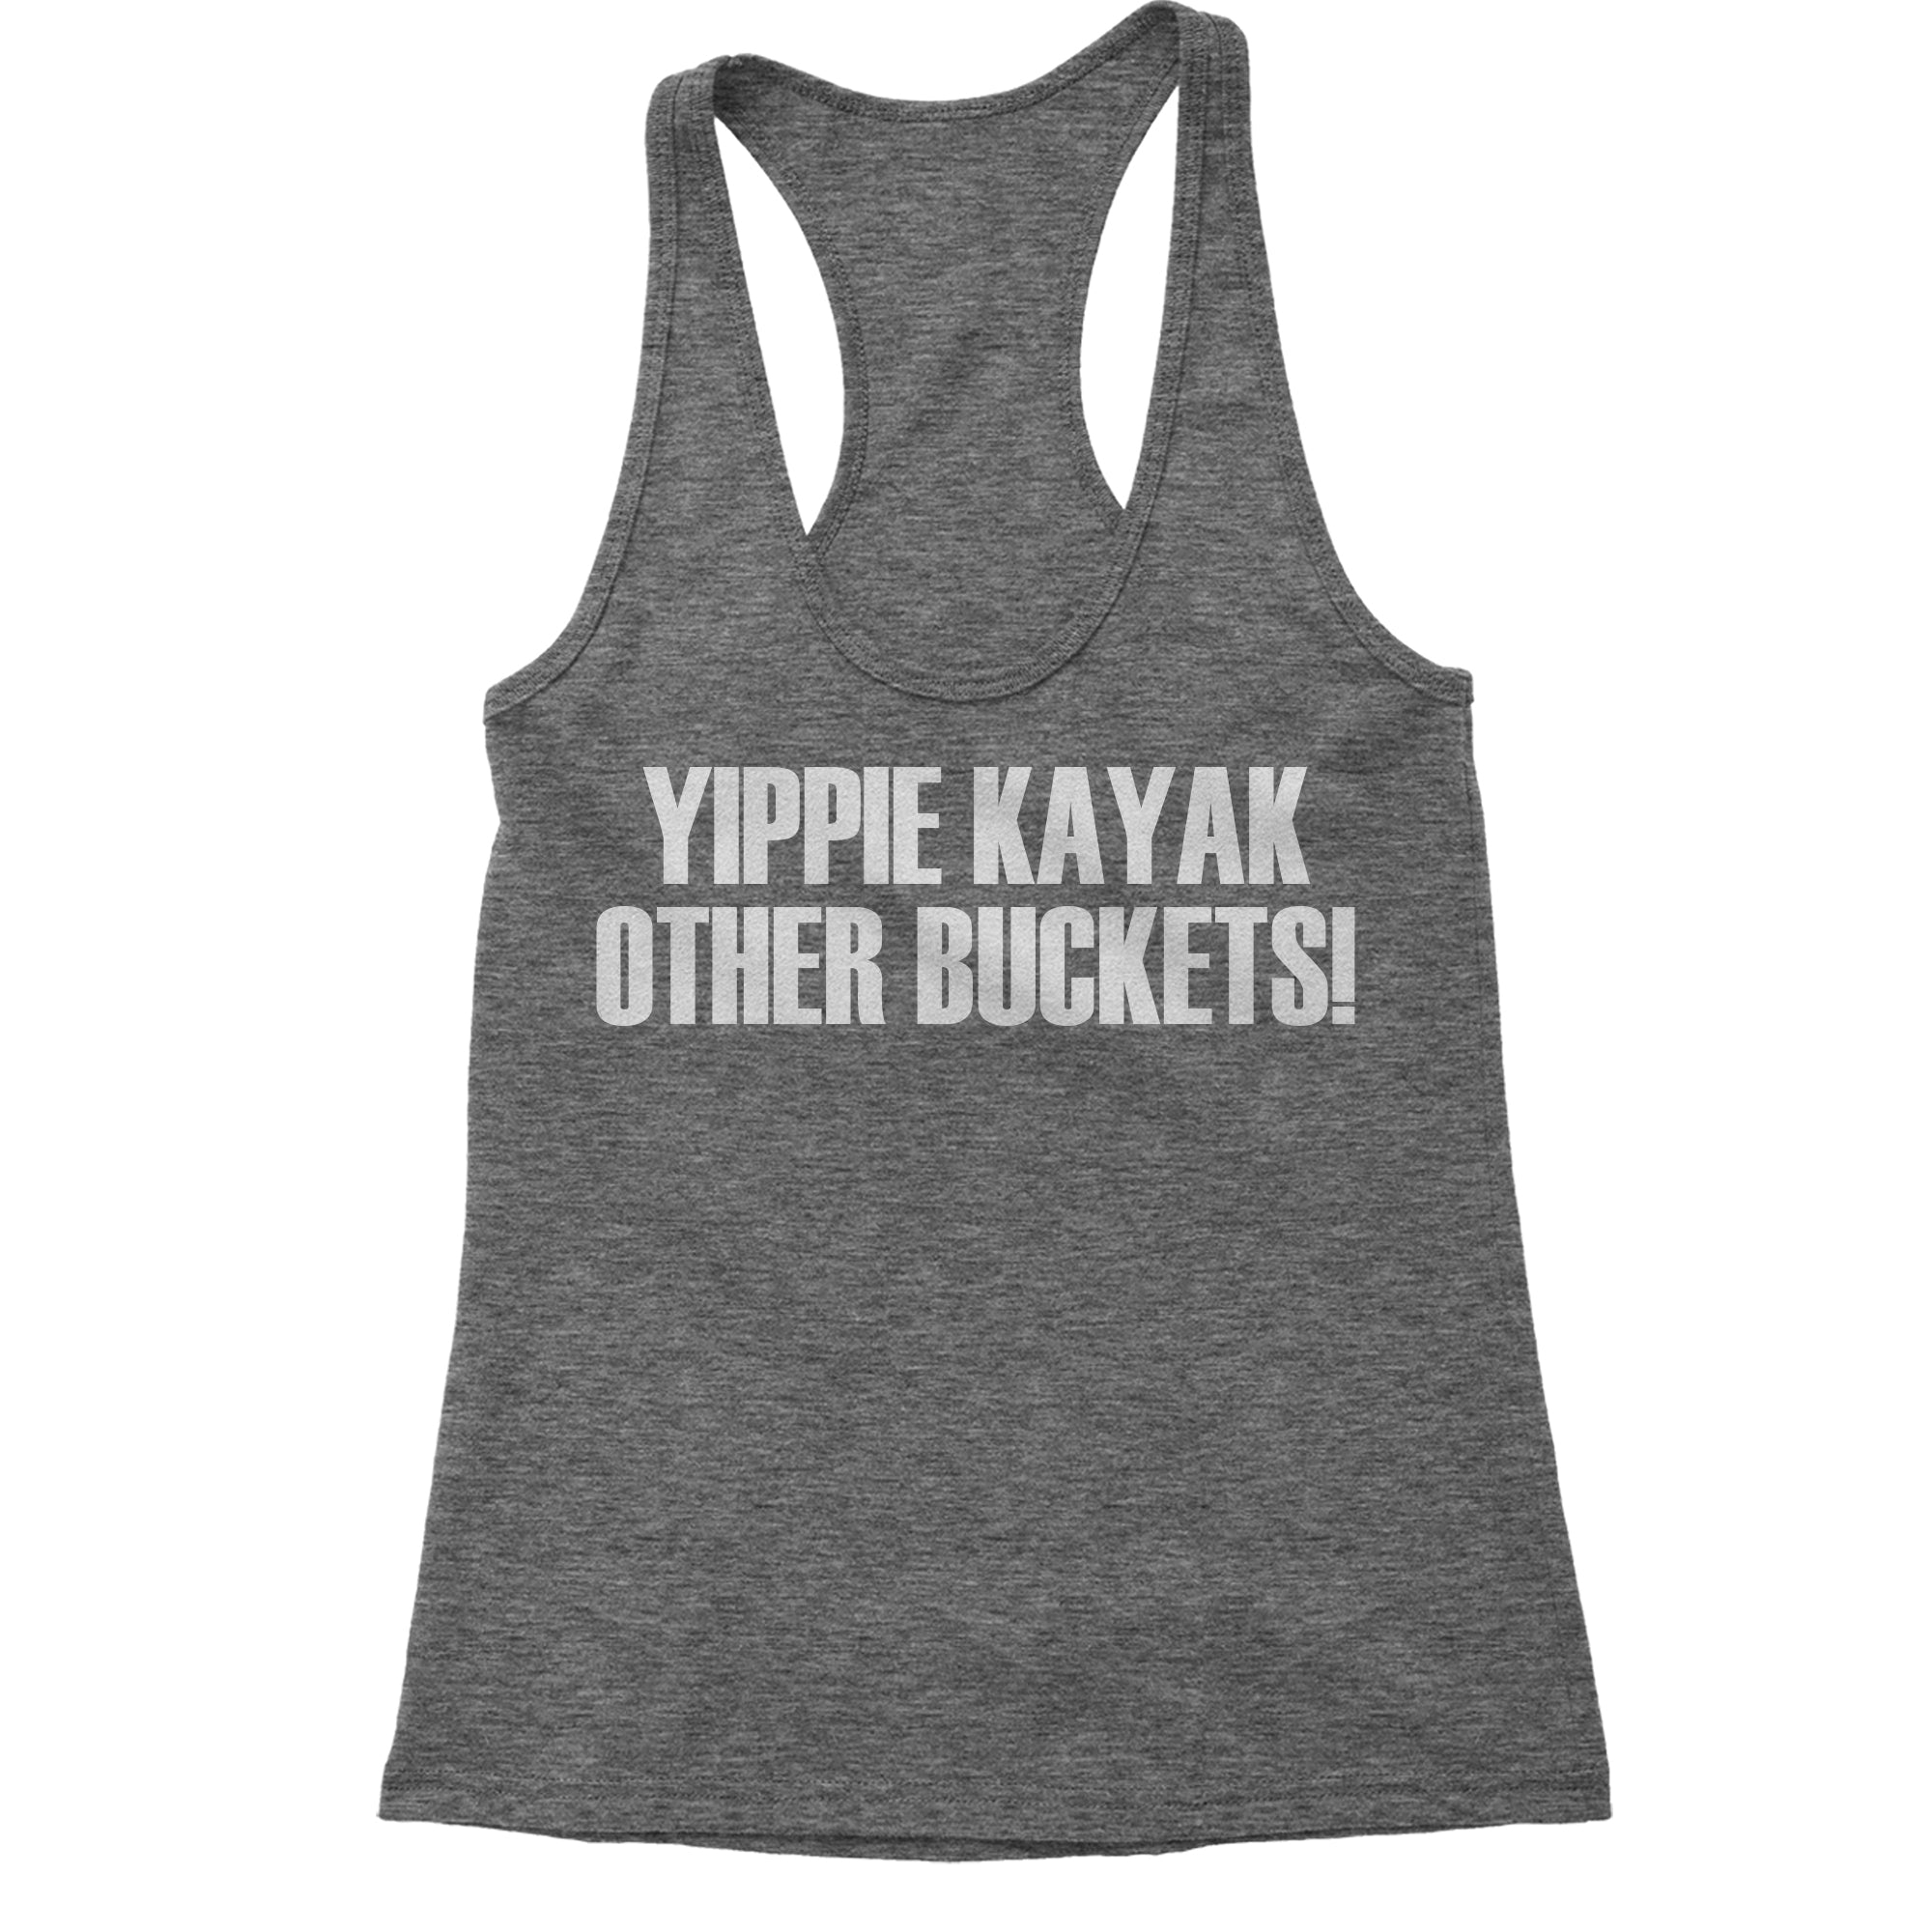 Yippie Kayak Other Buckets Brooklyn 99 Women's Racerback Tank